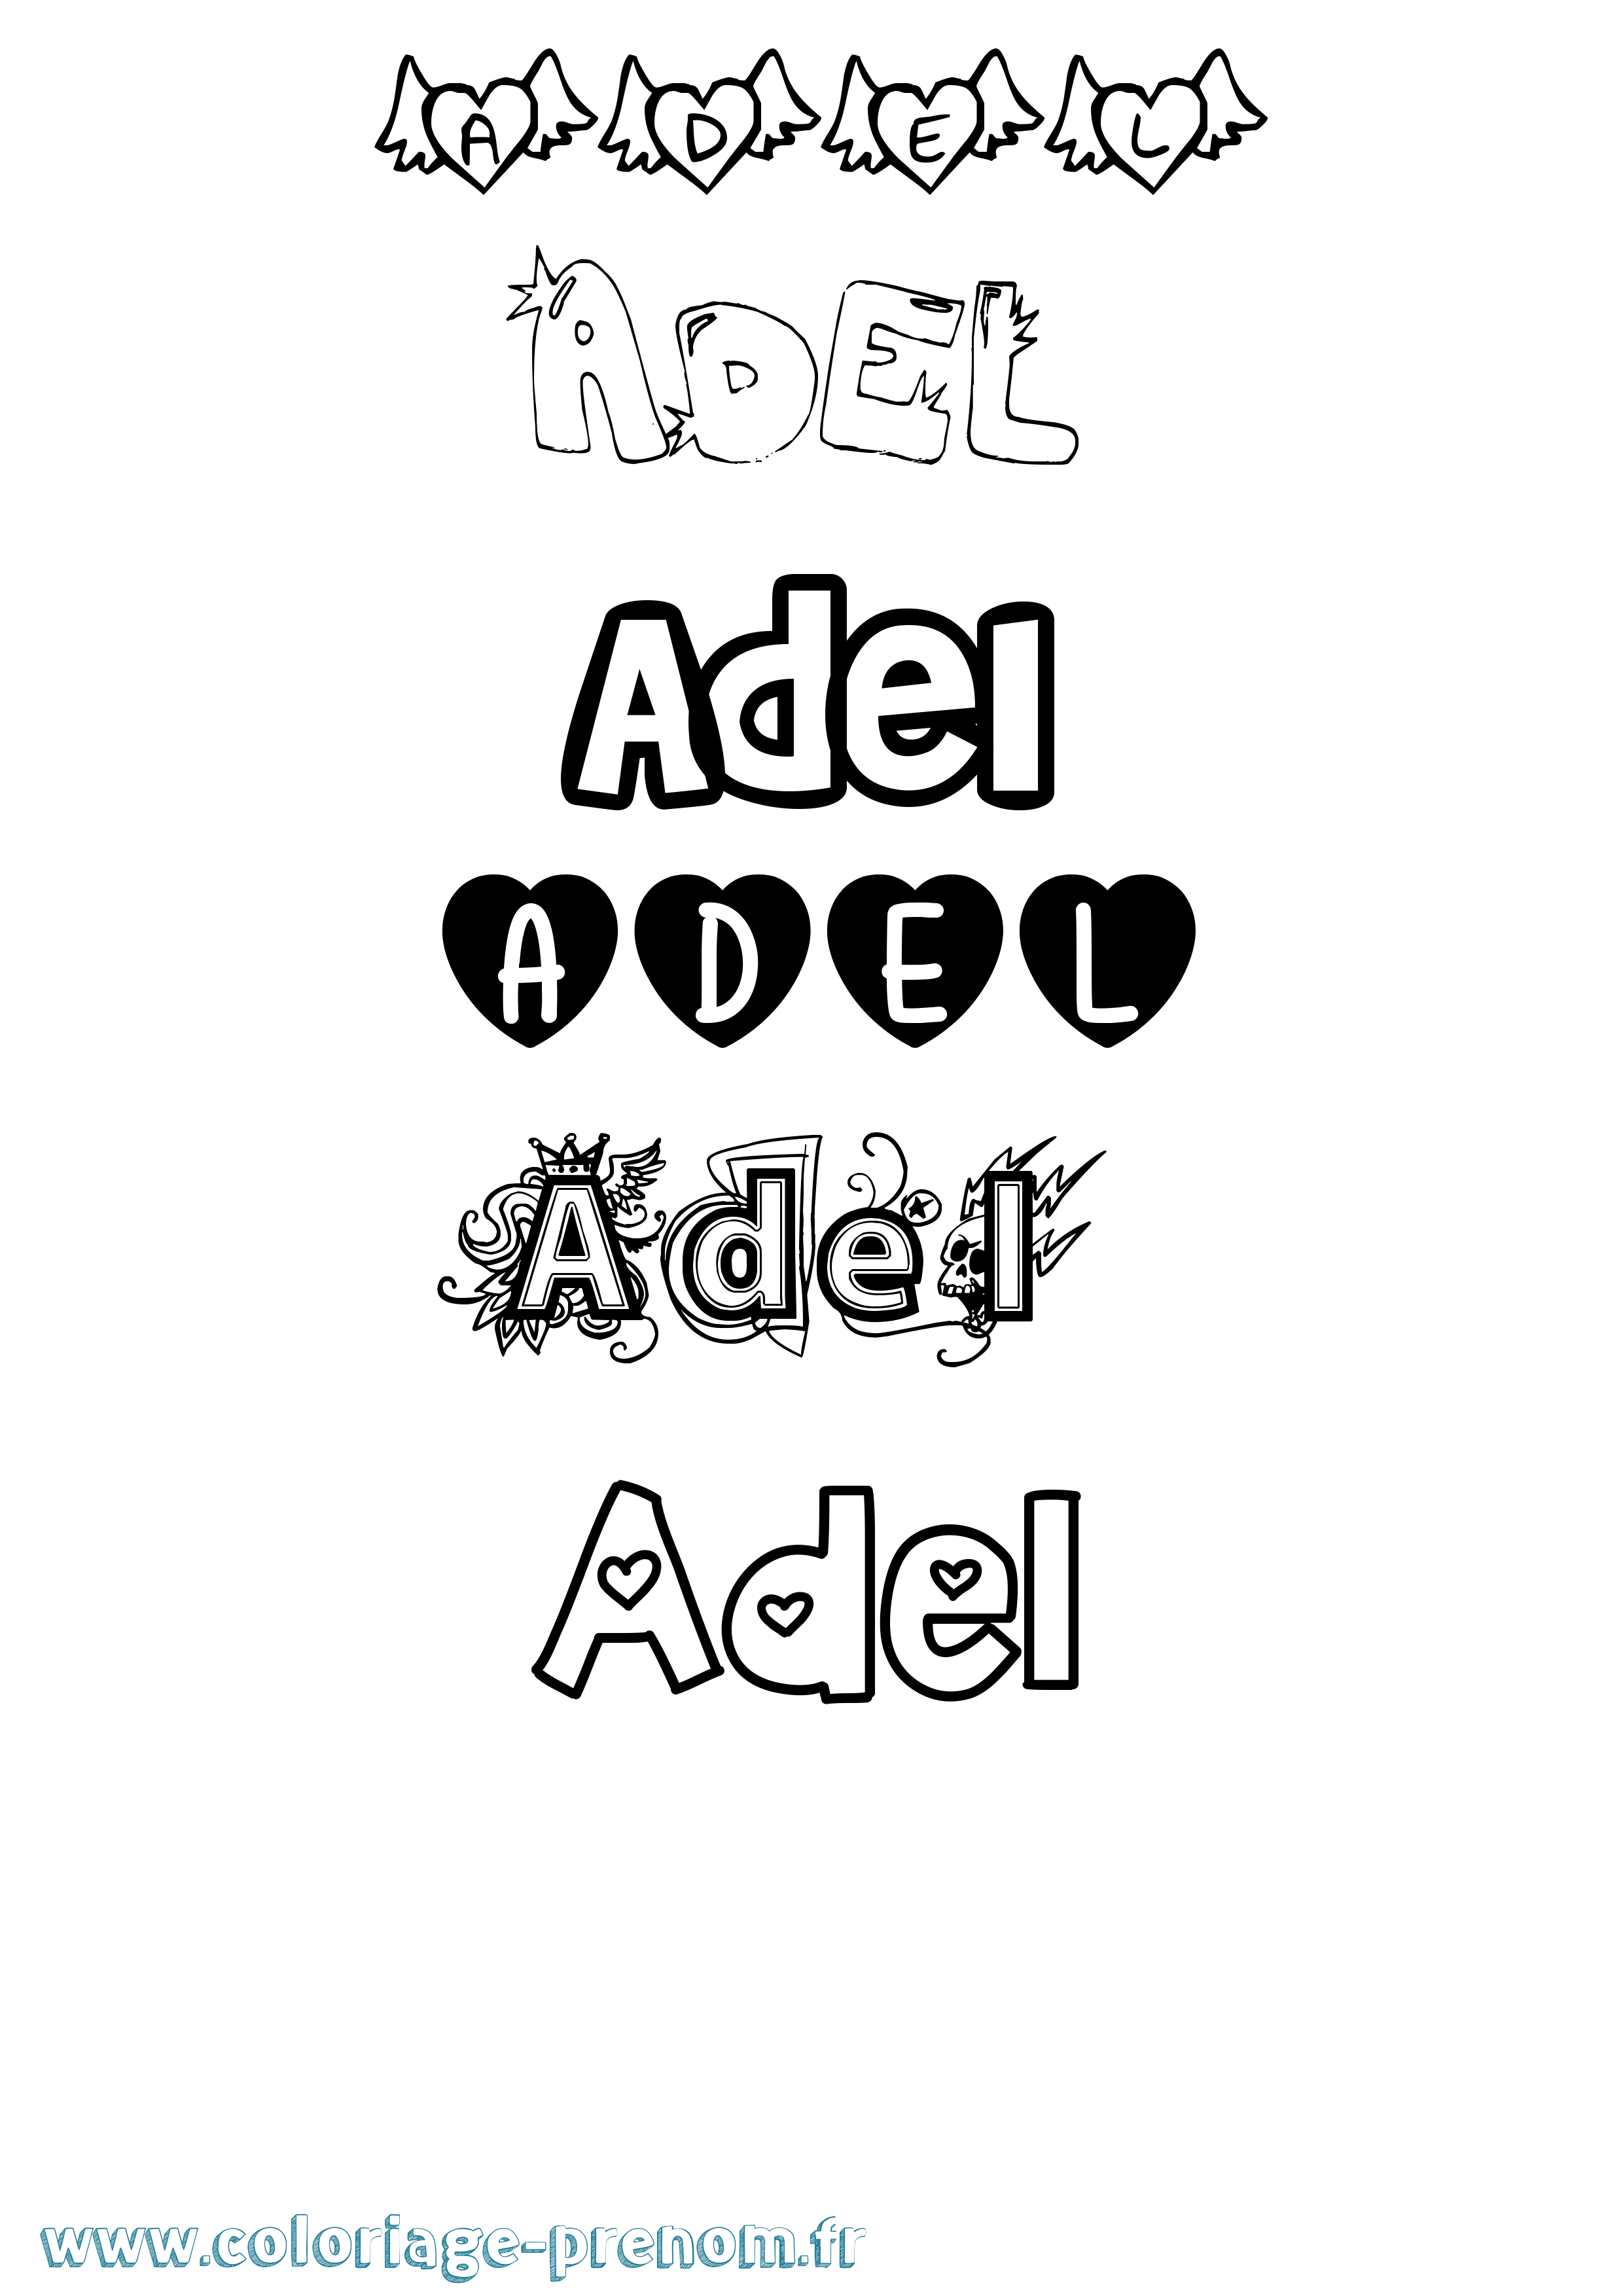 Coloriage prénom Adel